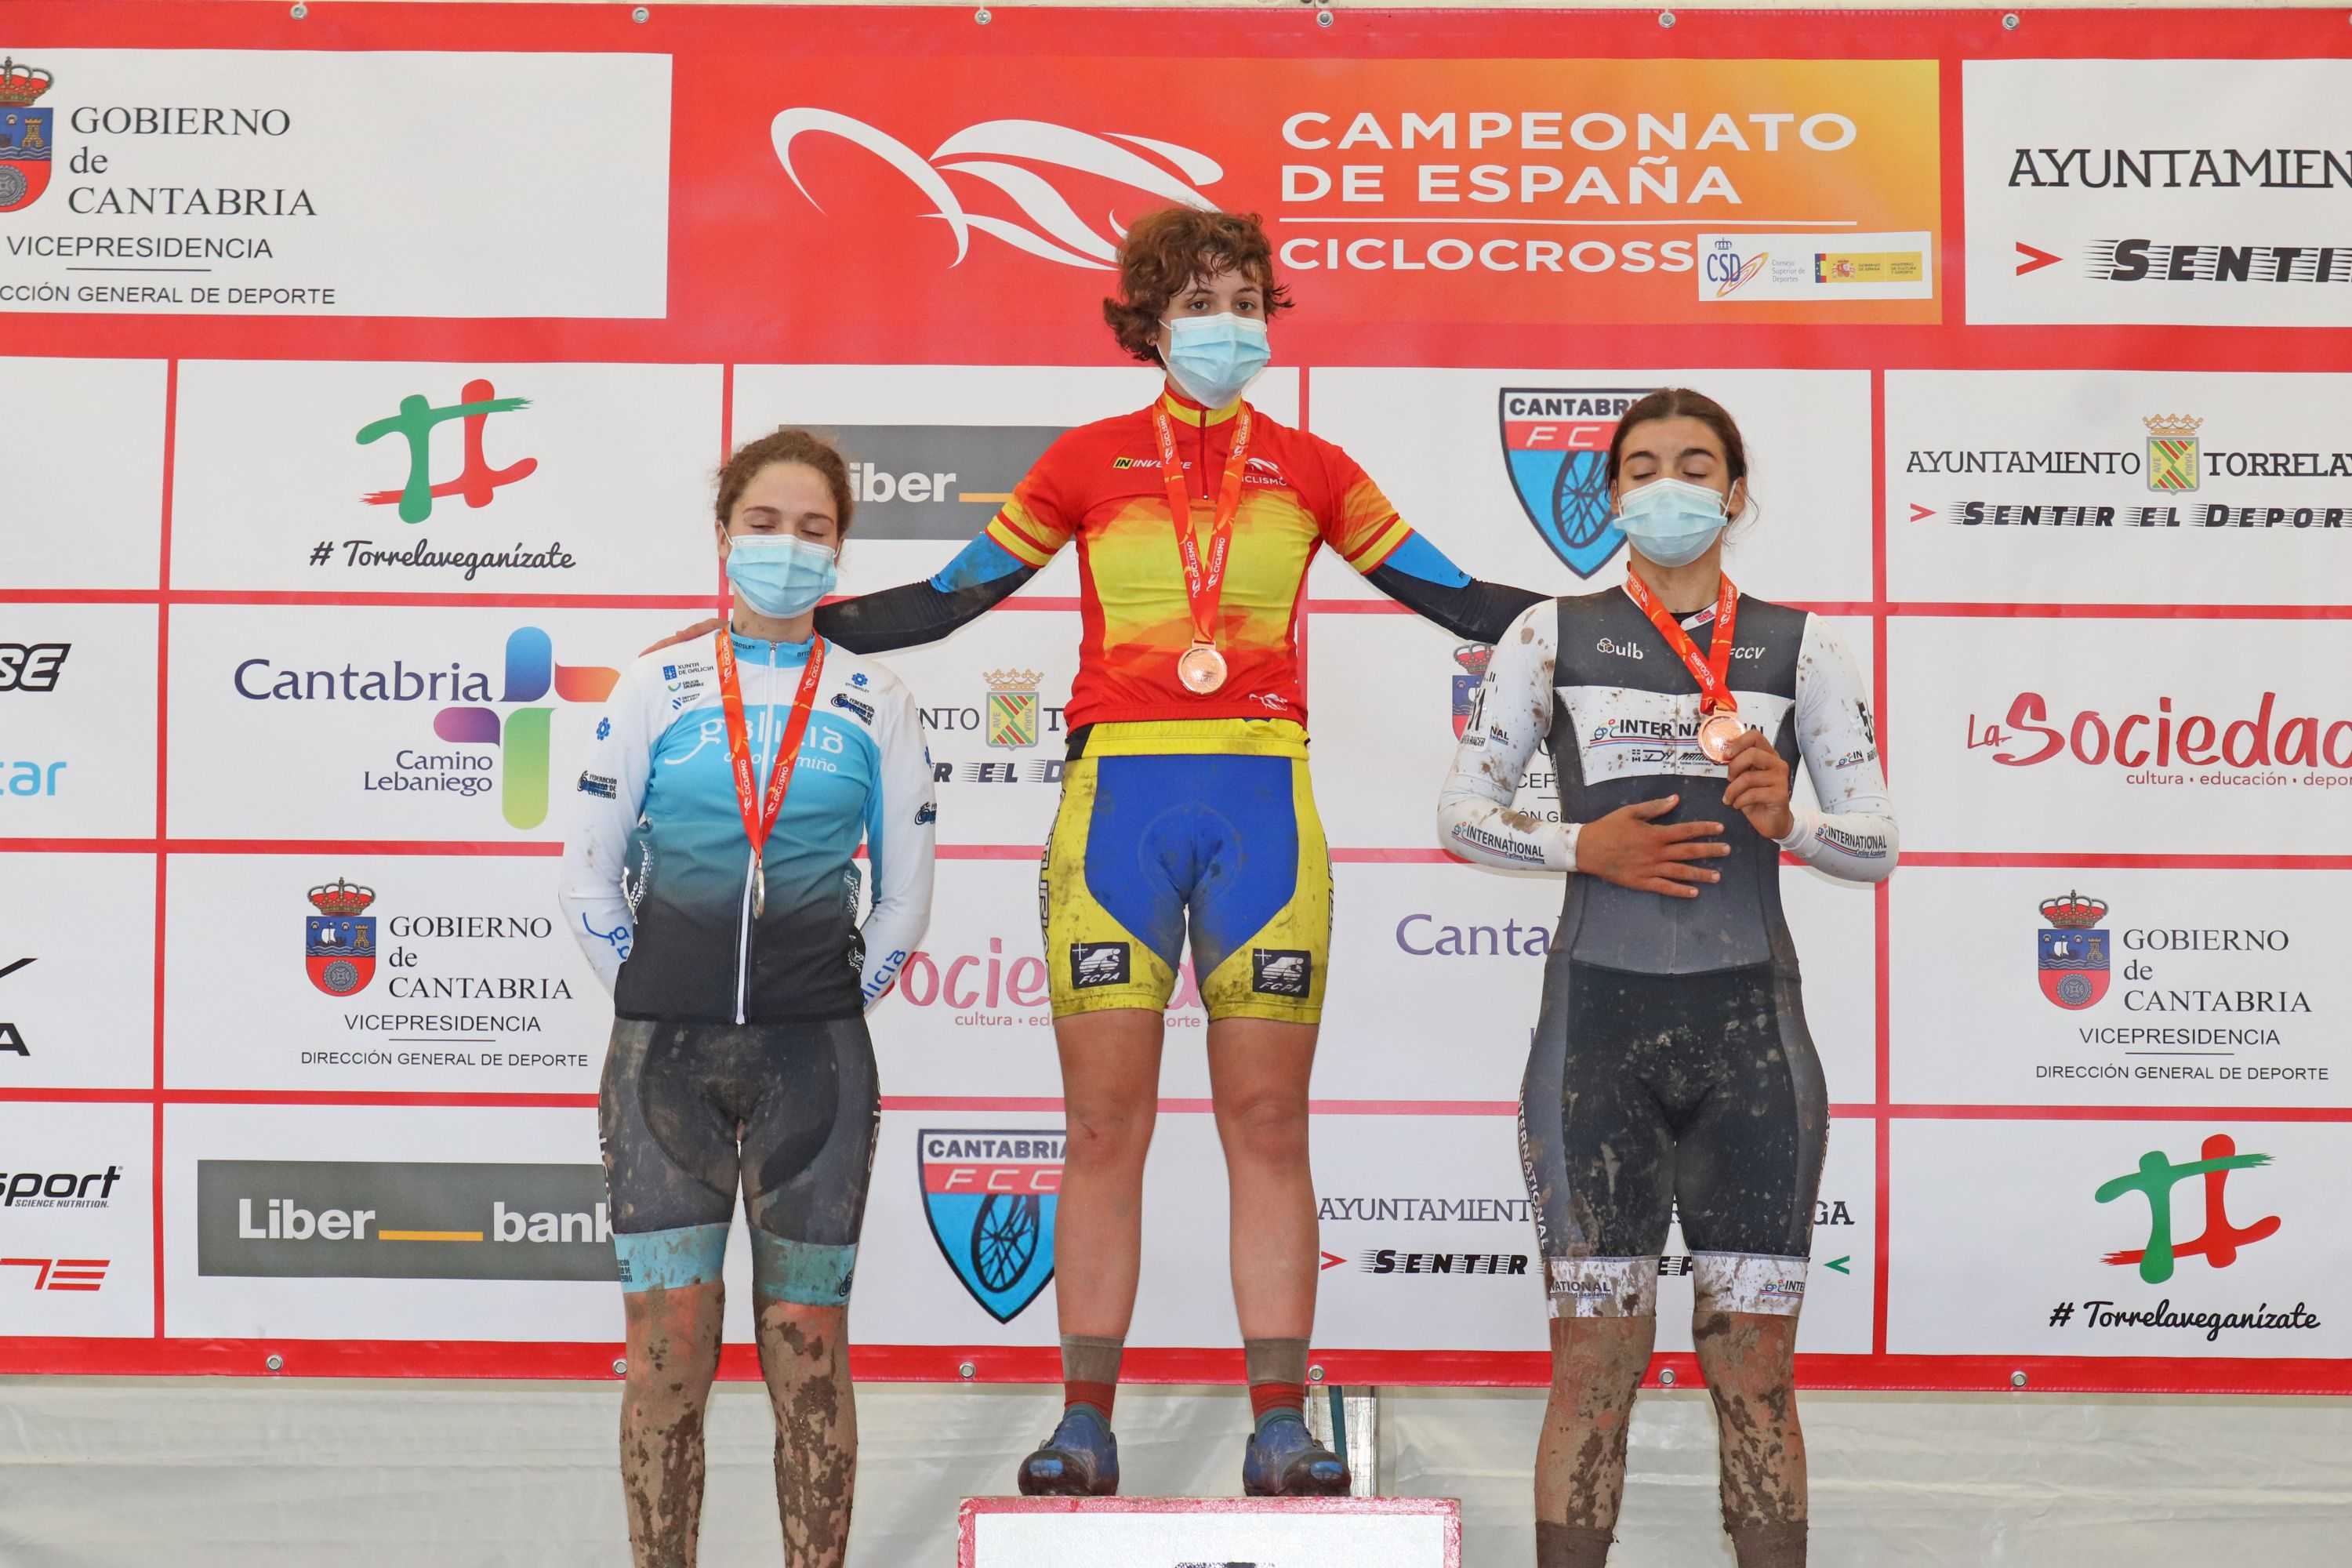 Orts y González reeditan en Torrelavega sus títulos de campeones de España de ciclocross